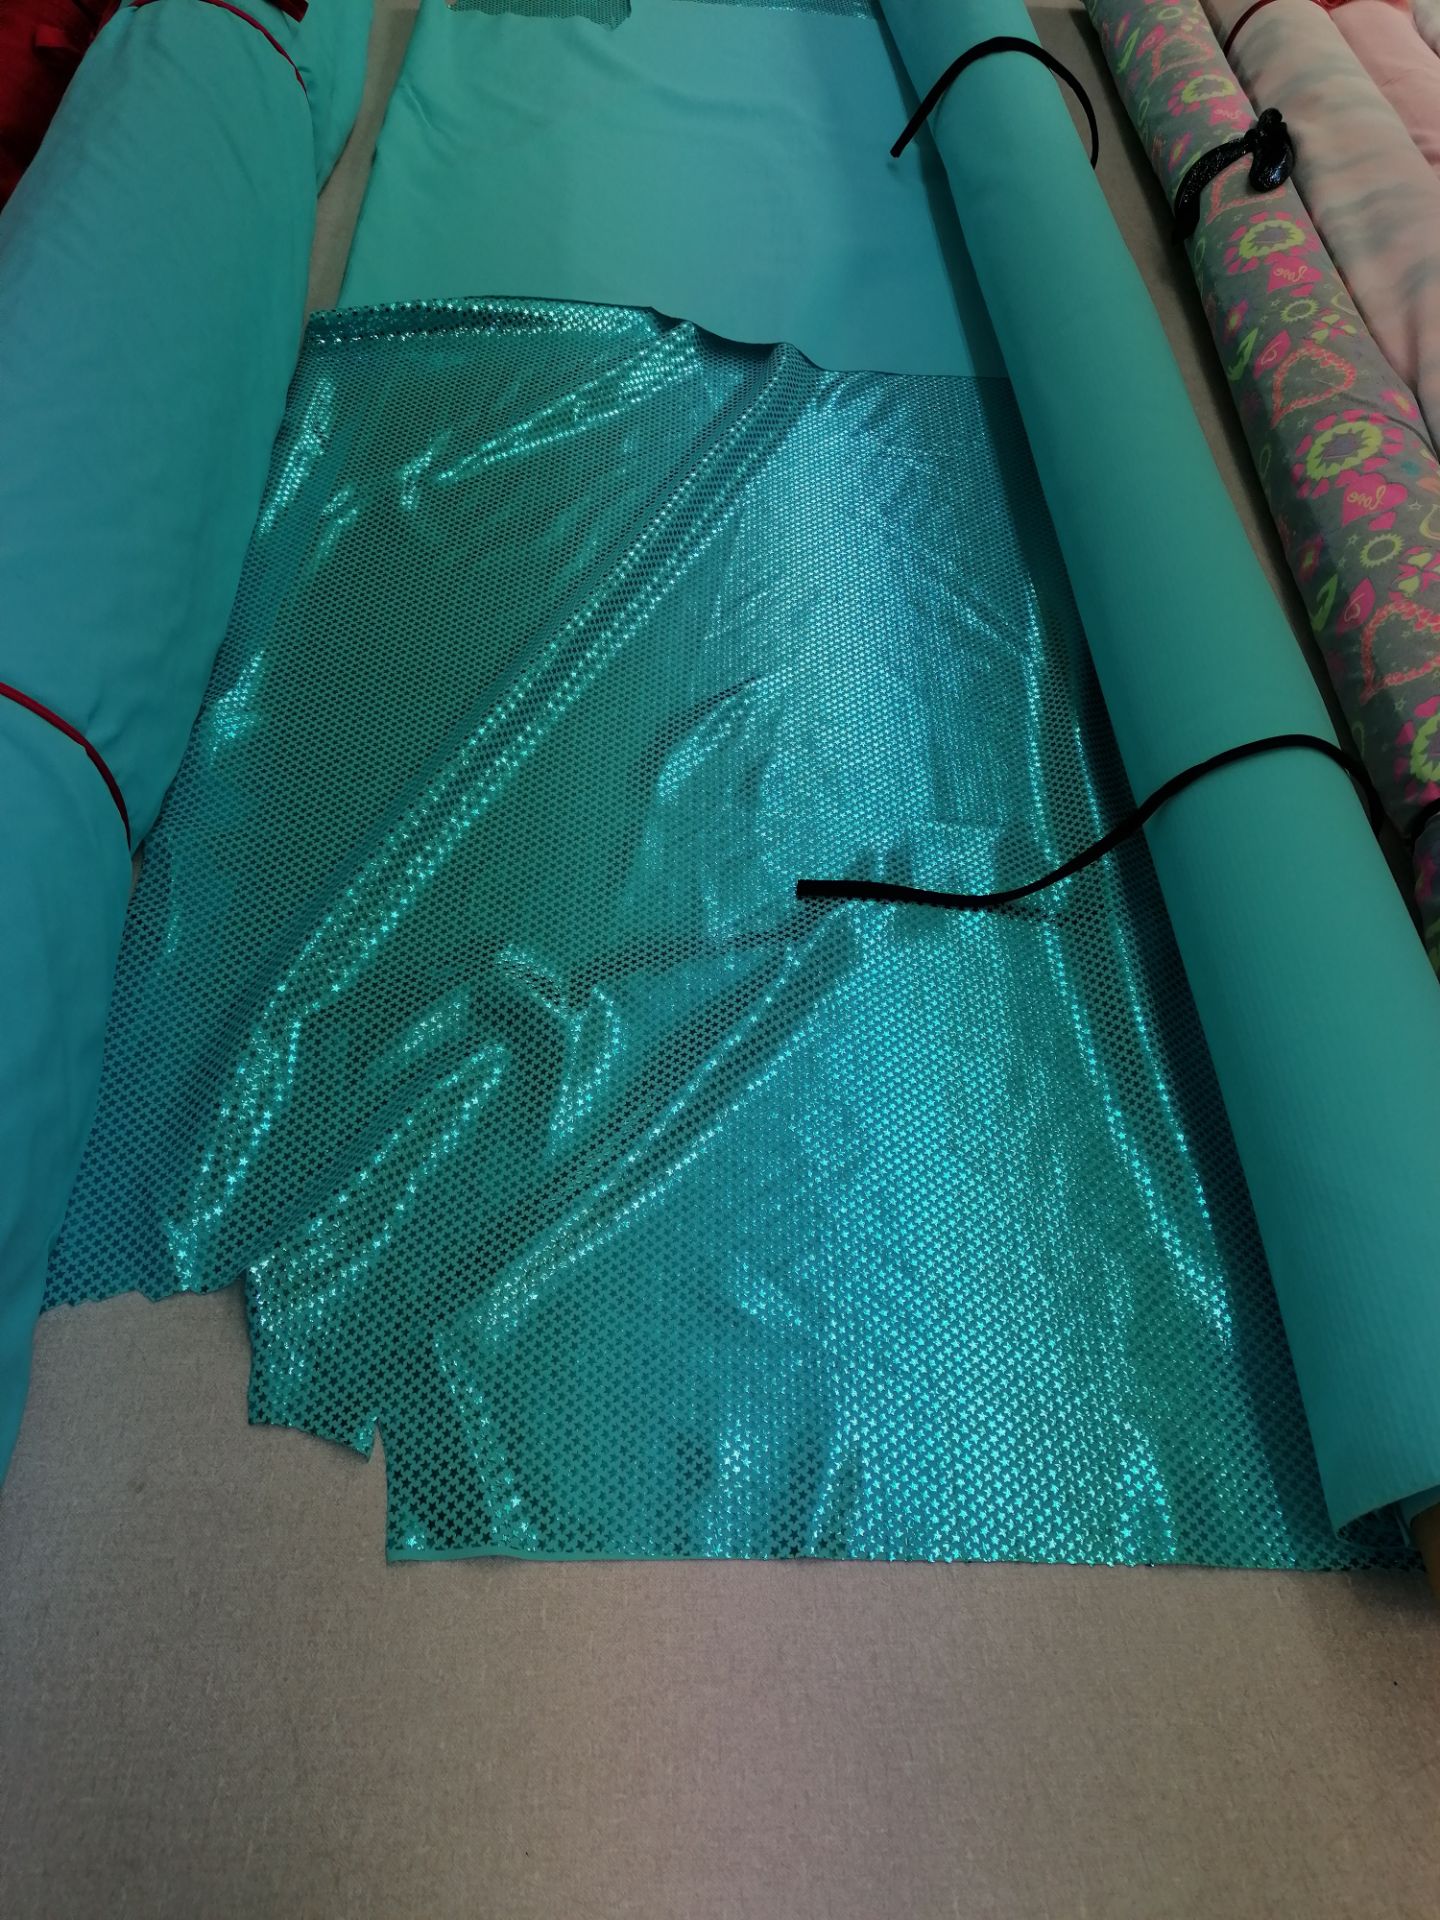 3 x Rolls holgram lycra fabric.Estimated 25 m rrp £25-30 per meter - Image 2 of 4